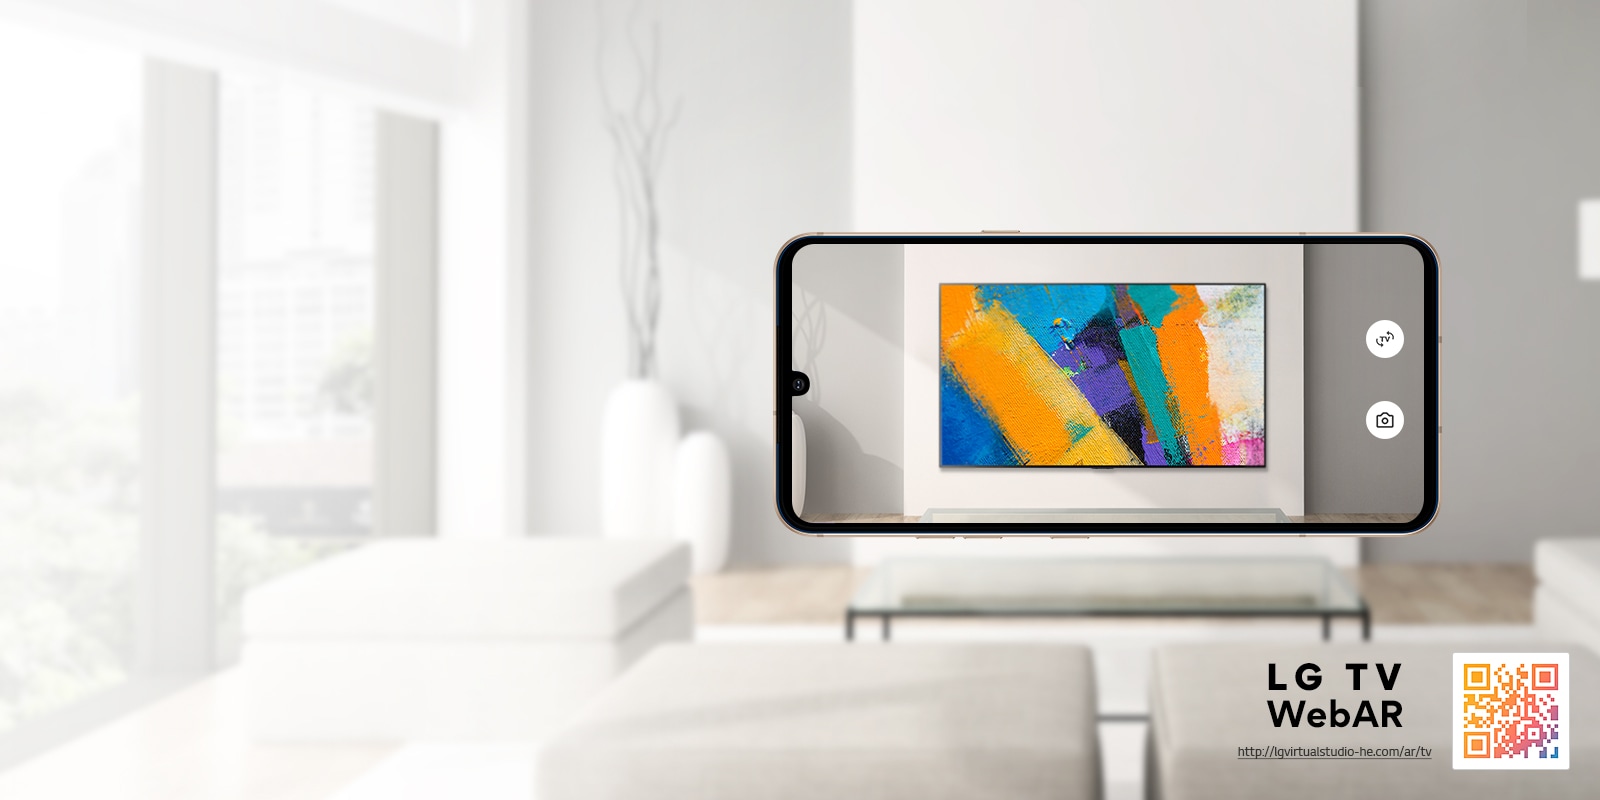 Це зображення OLED-телевізора LG, симульоване за допомогою технології WebAR. Зображення на мобільному телефоні накладаються на мінімалістське приміщення. У правому нижньому куті розміщено QR-код.